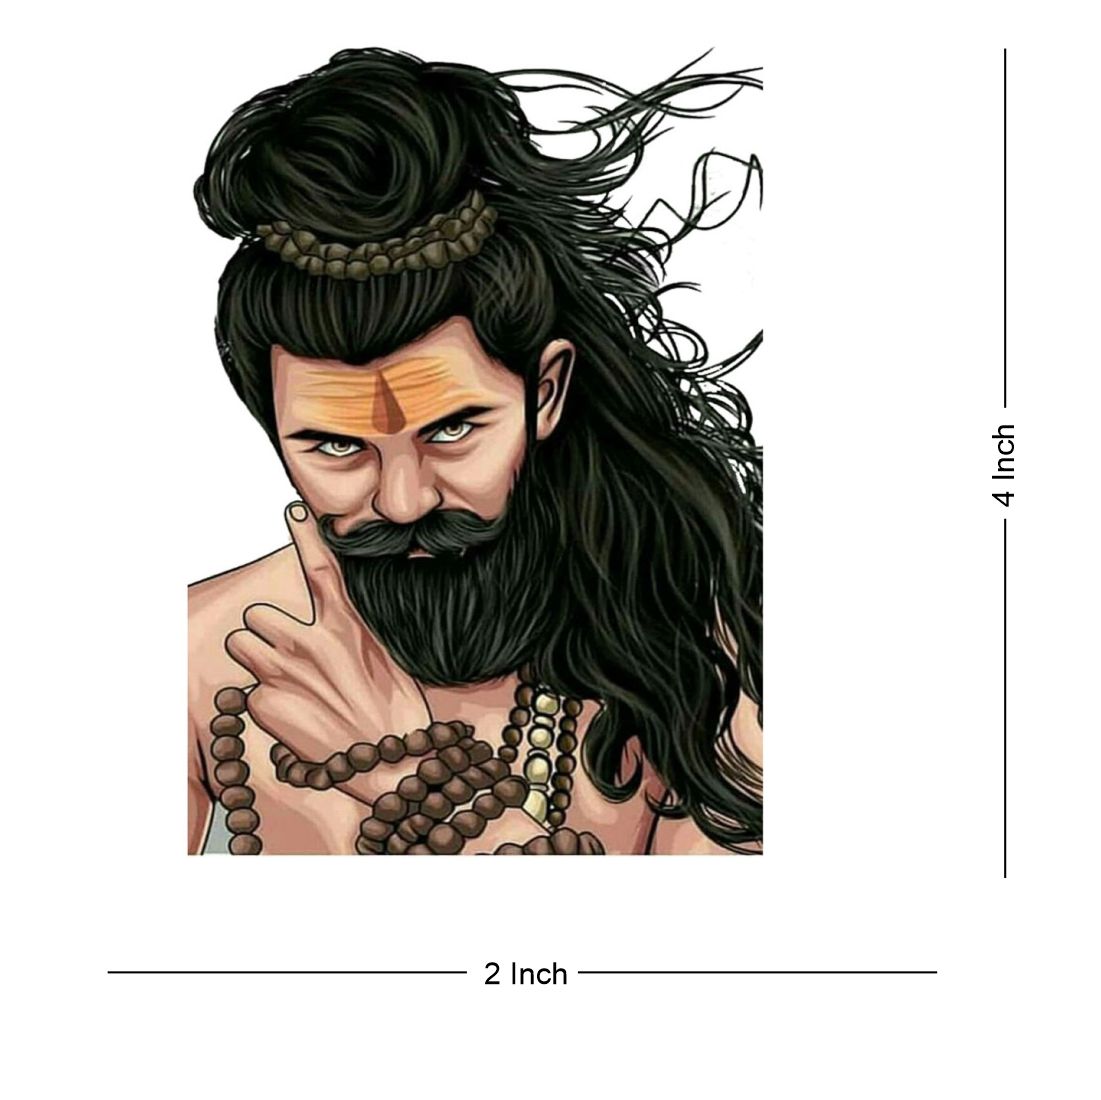 Tilak tattoo / shiva tilak tattoo | Shiva tattoo, Tattoos, Om tattoo